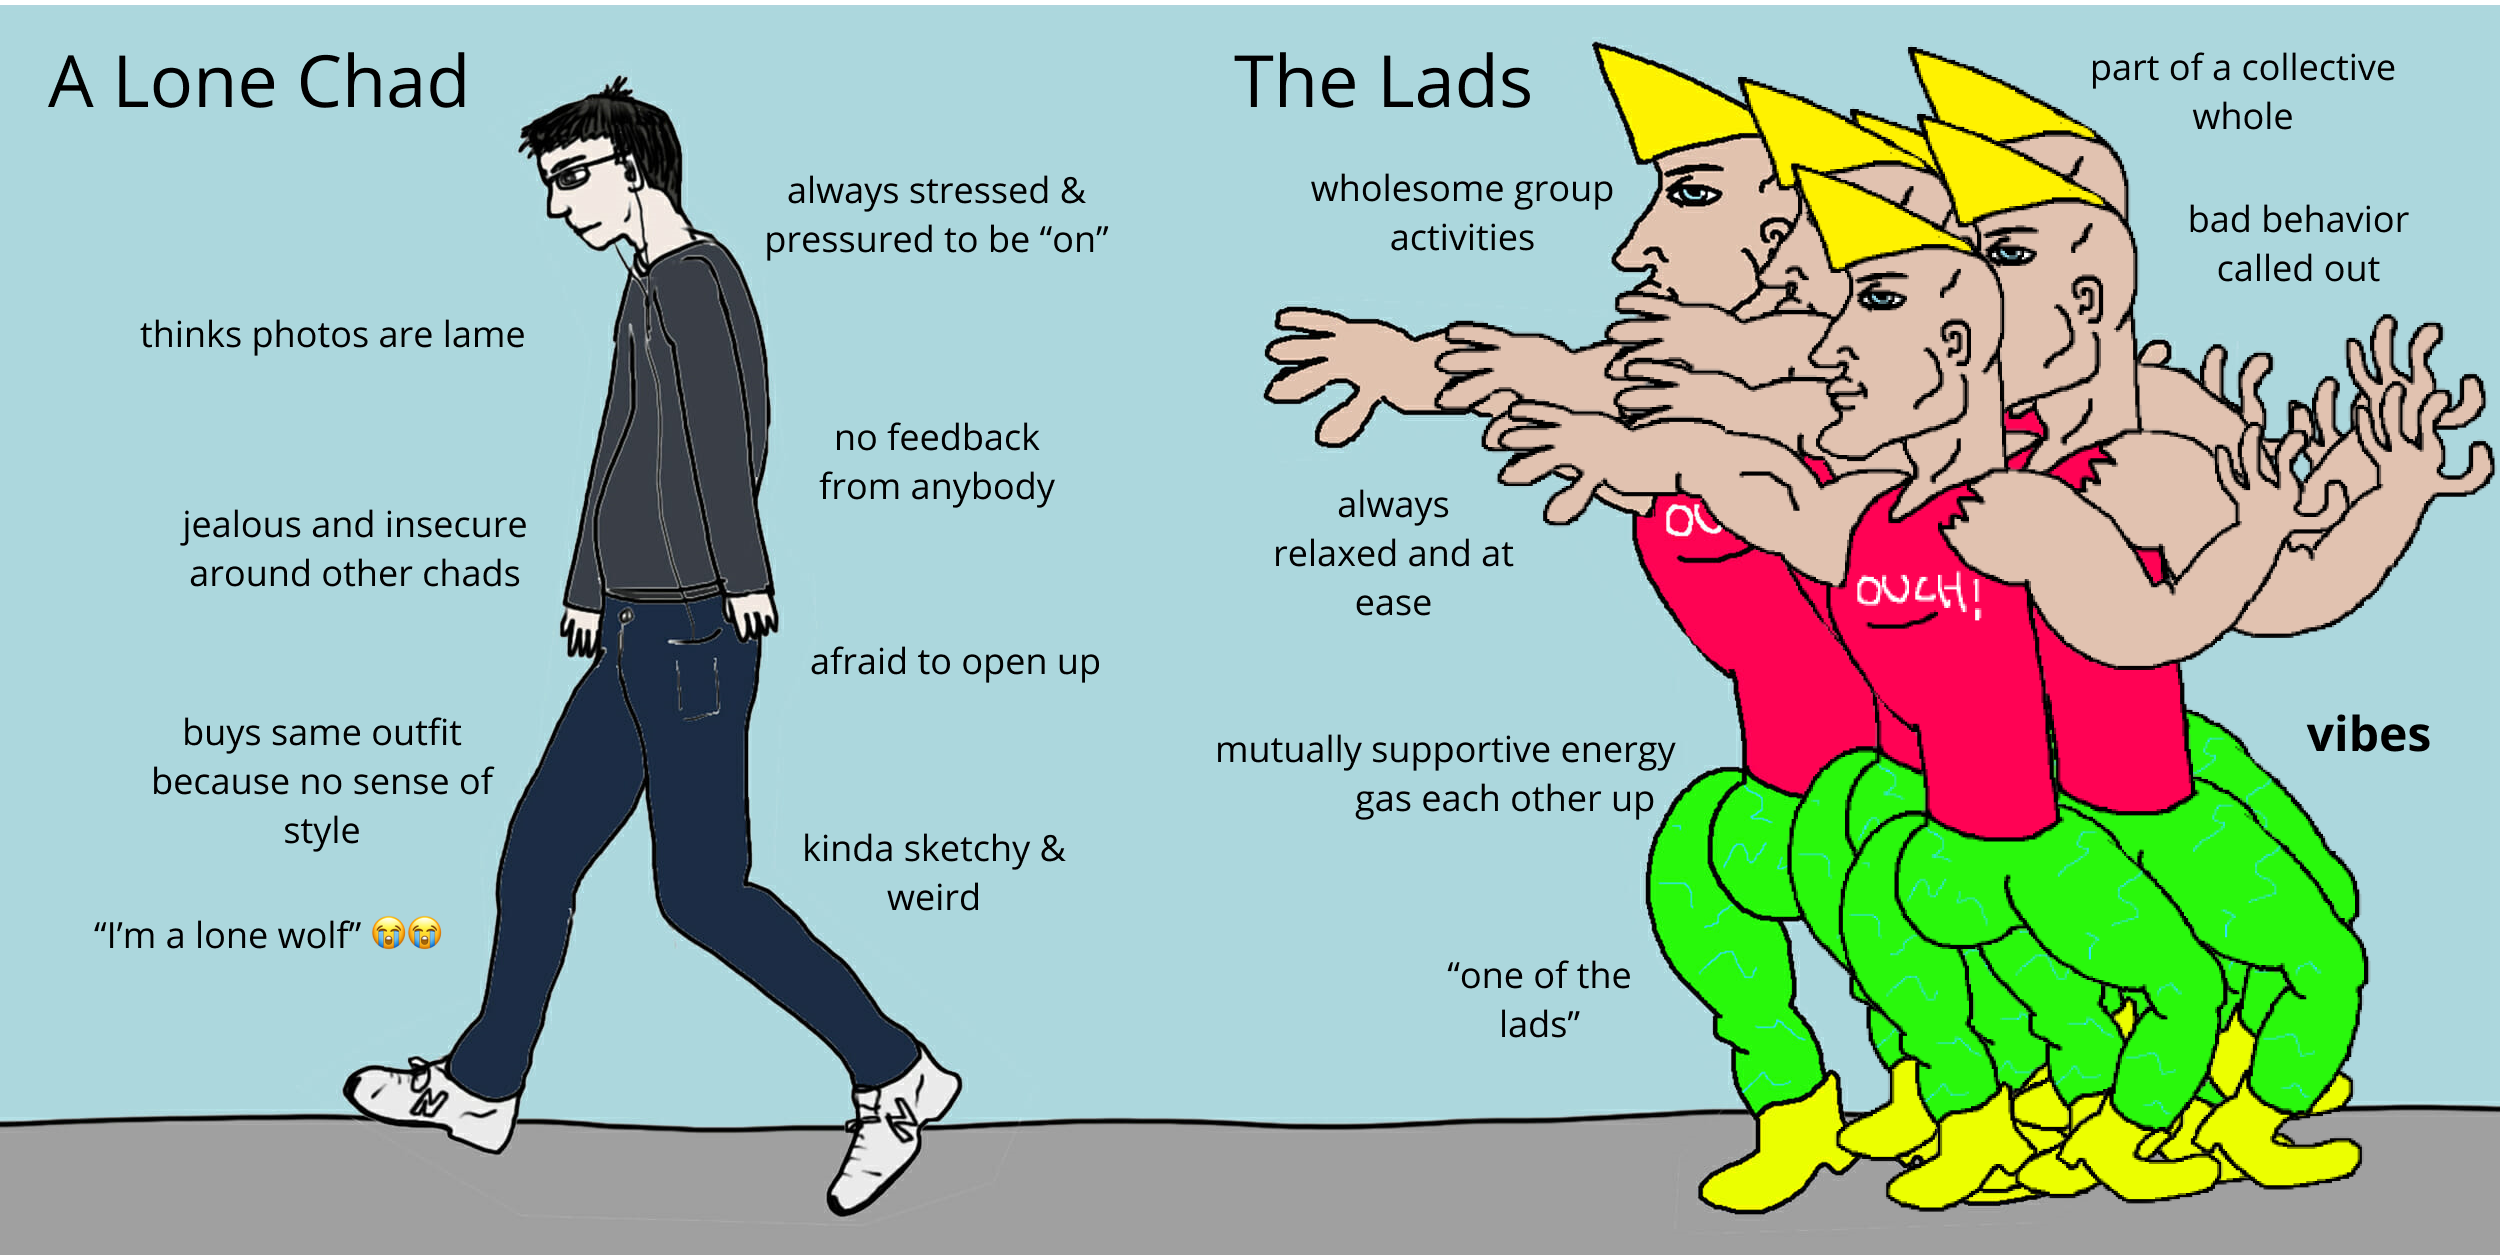 Lad Culture vs. Chad Culture